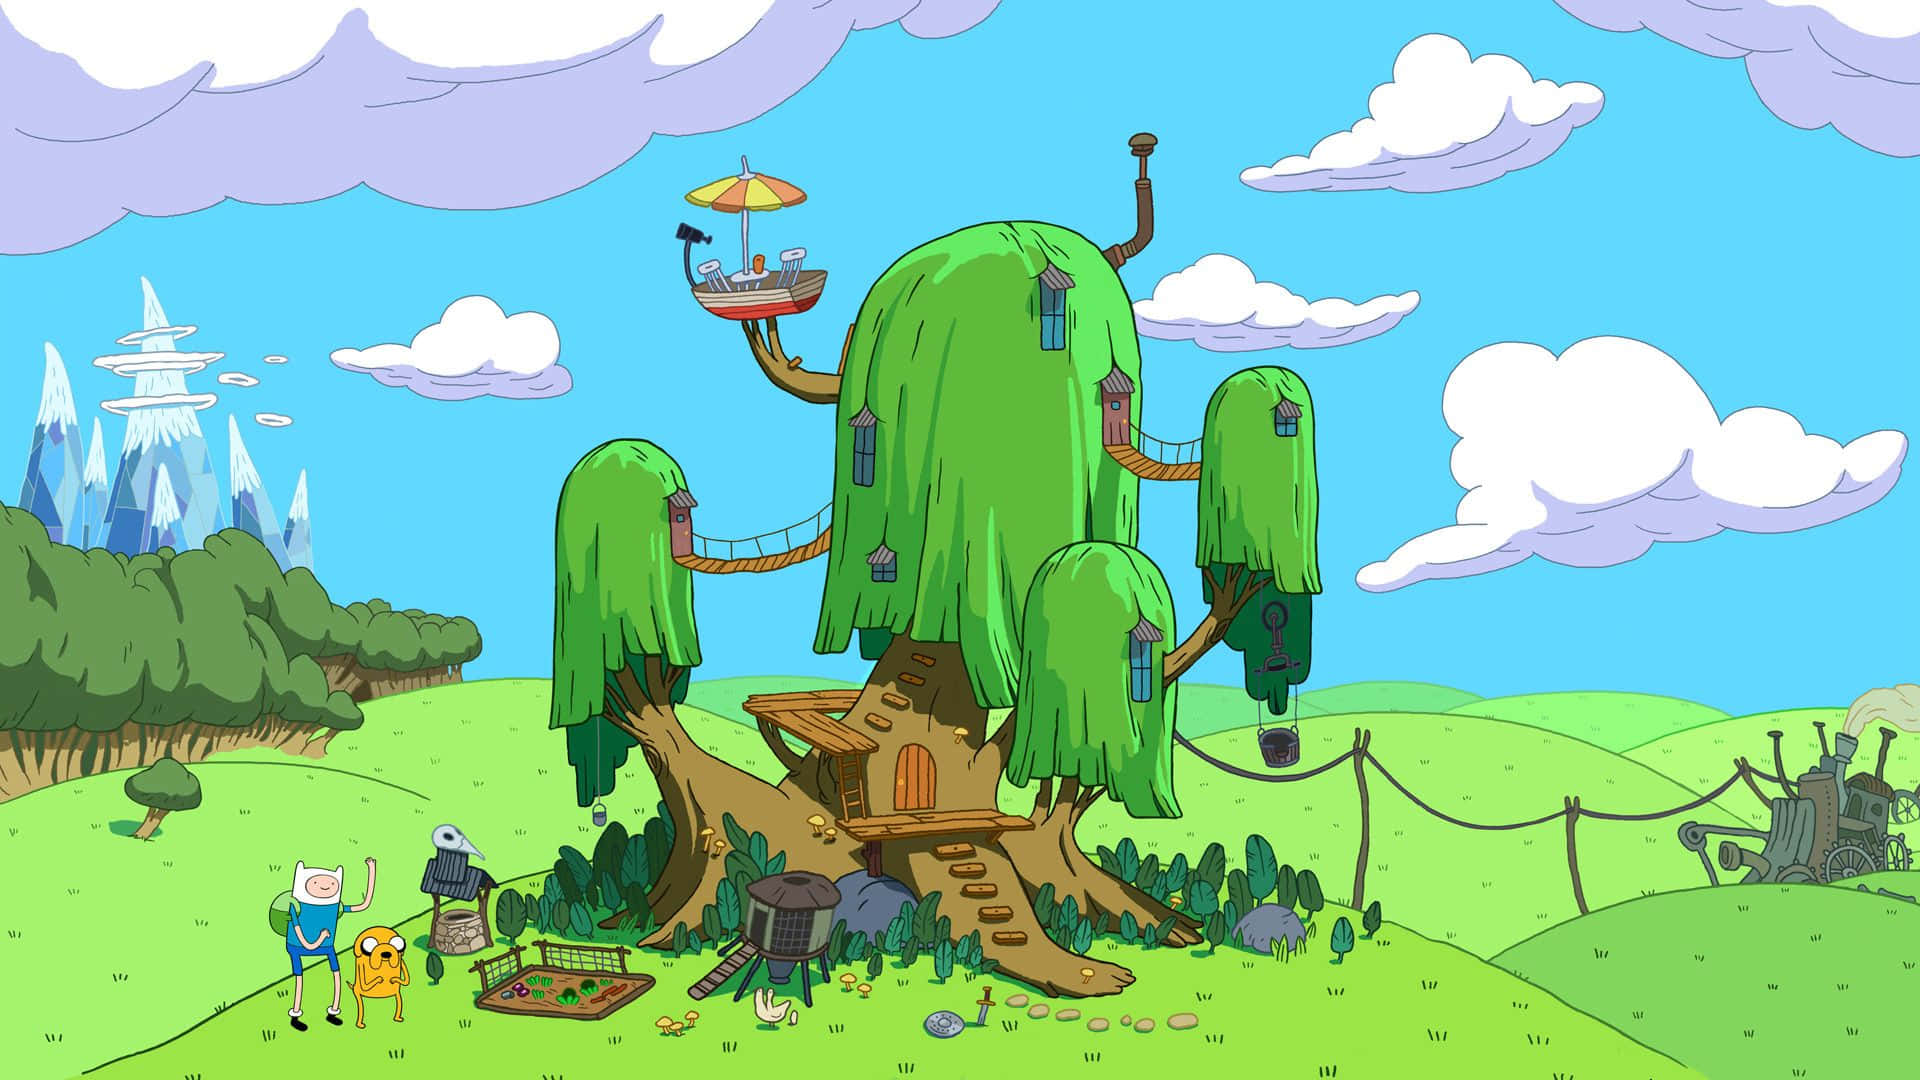 Nyd en episk eventyr i landskaber som denne fra Adventure Time. Wallpaper